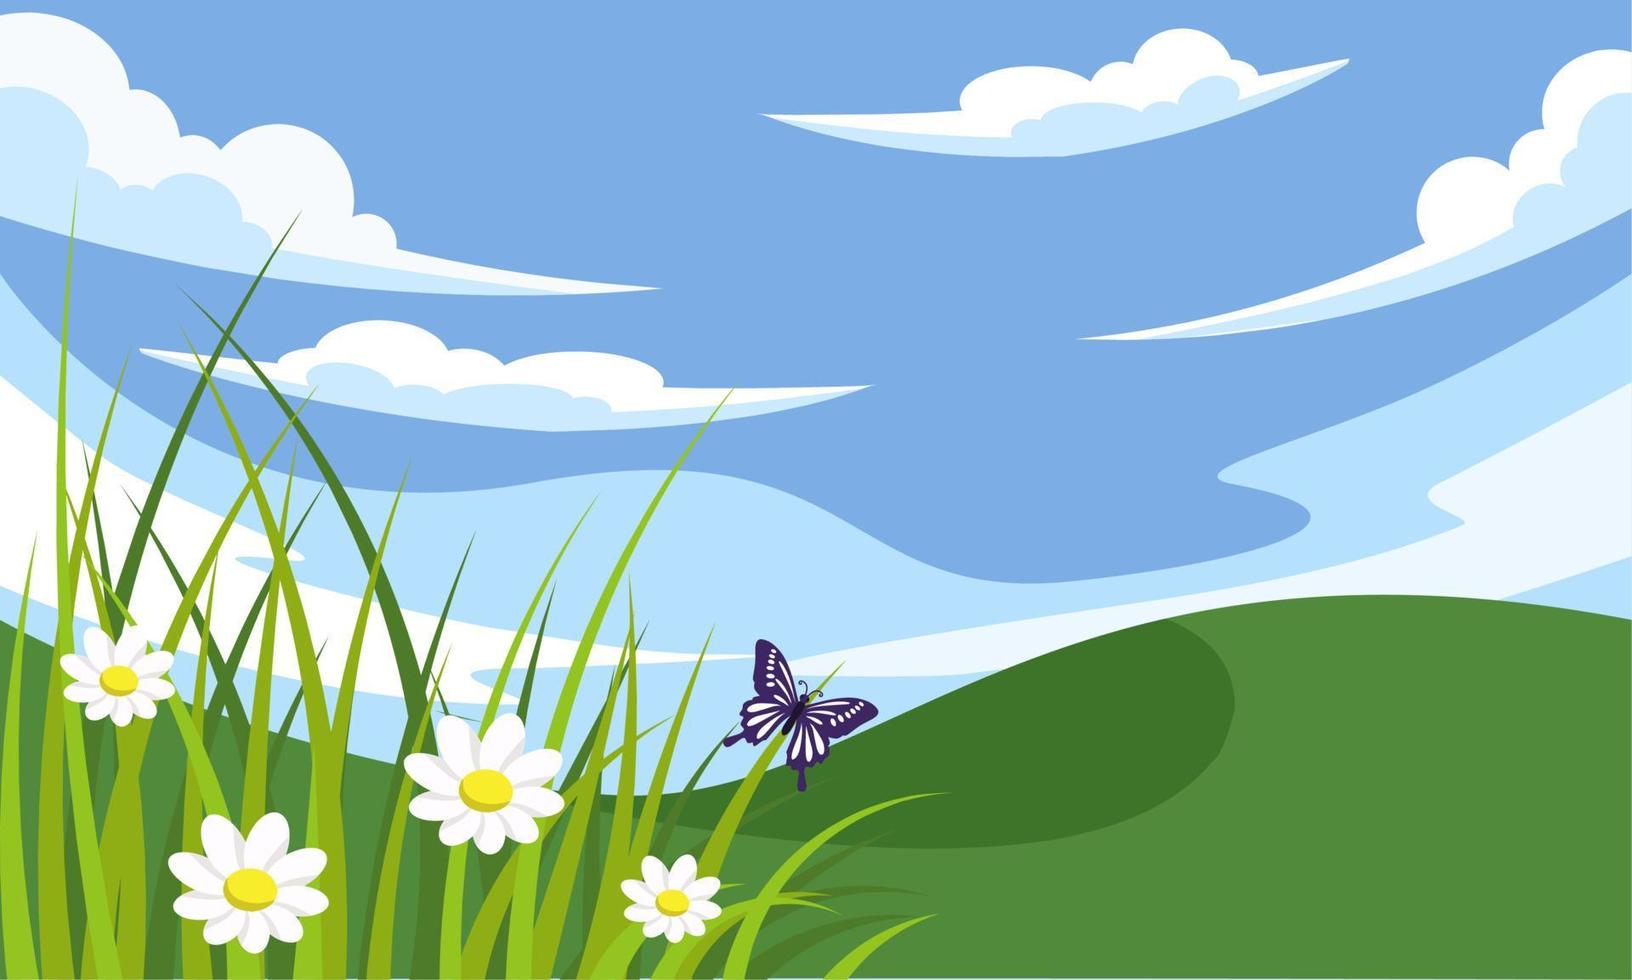 sfondo primaverile, paesaggio con fiori, erba, farfalle e cielo blu. illustrazione vettoriale. vettore